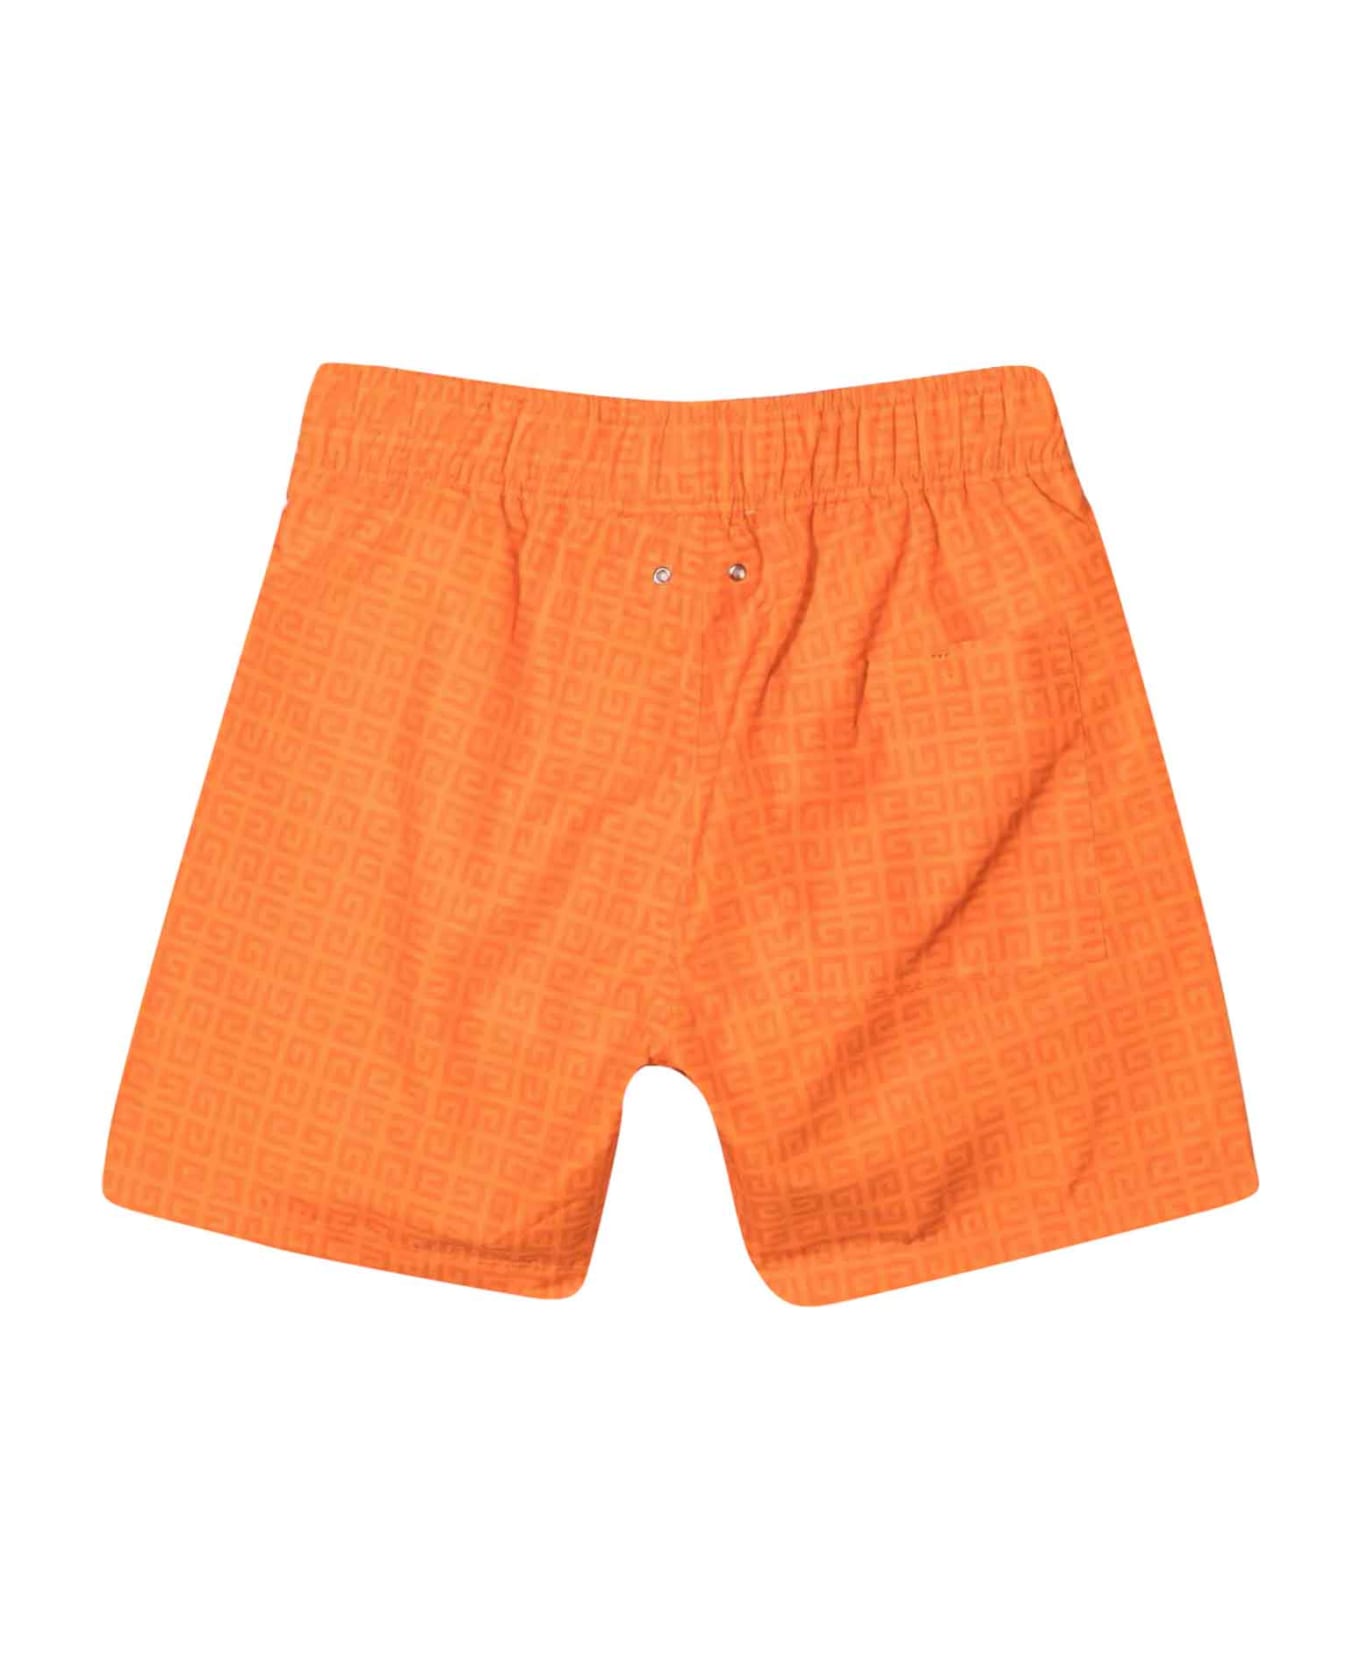 Givenchy Orange Boy Swimsuit - Arancione